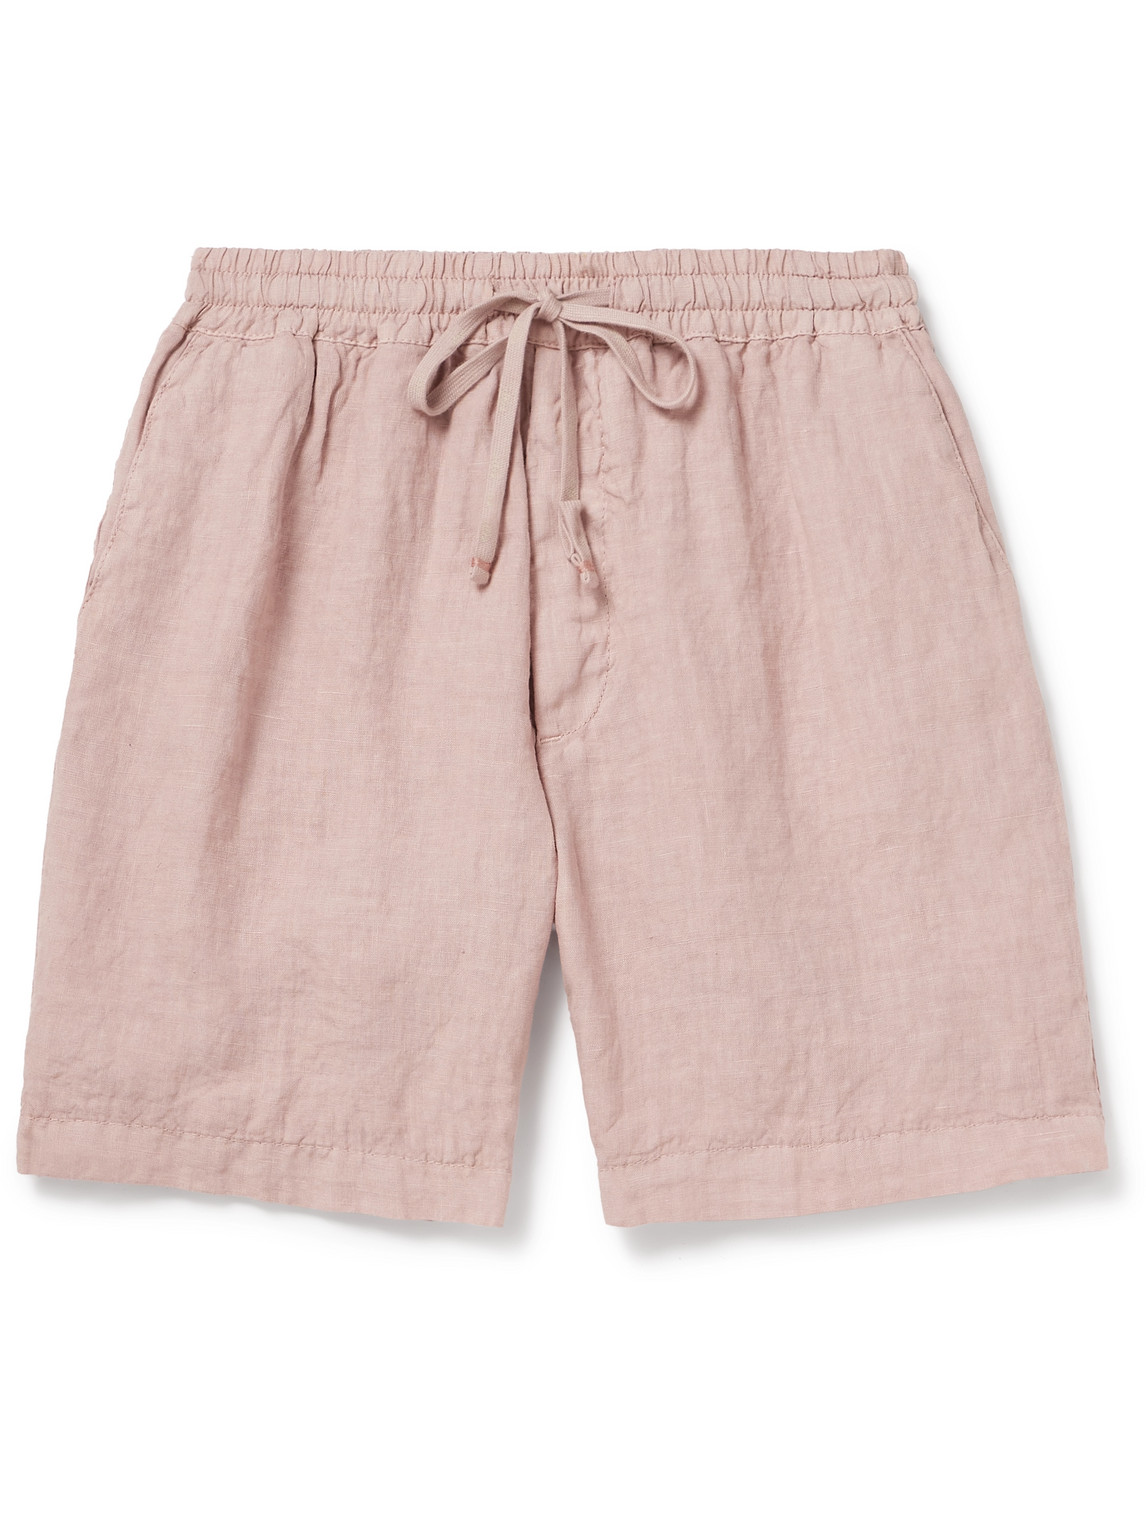 Altea - Samuel Straight-Leg Linen Drawstring Shorts - Men - Pink - XXL von Altea